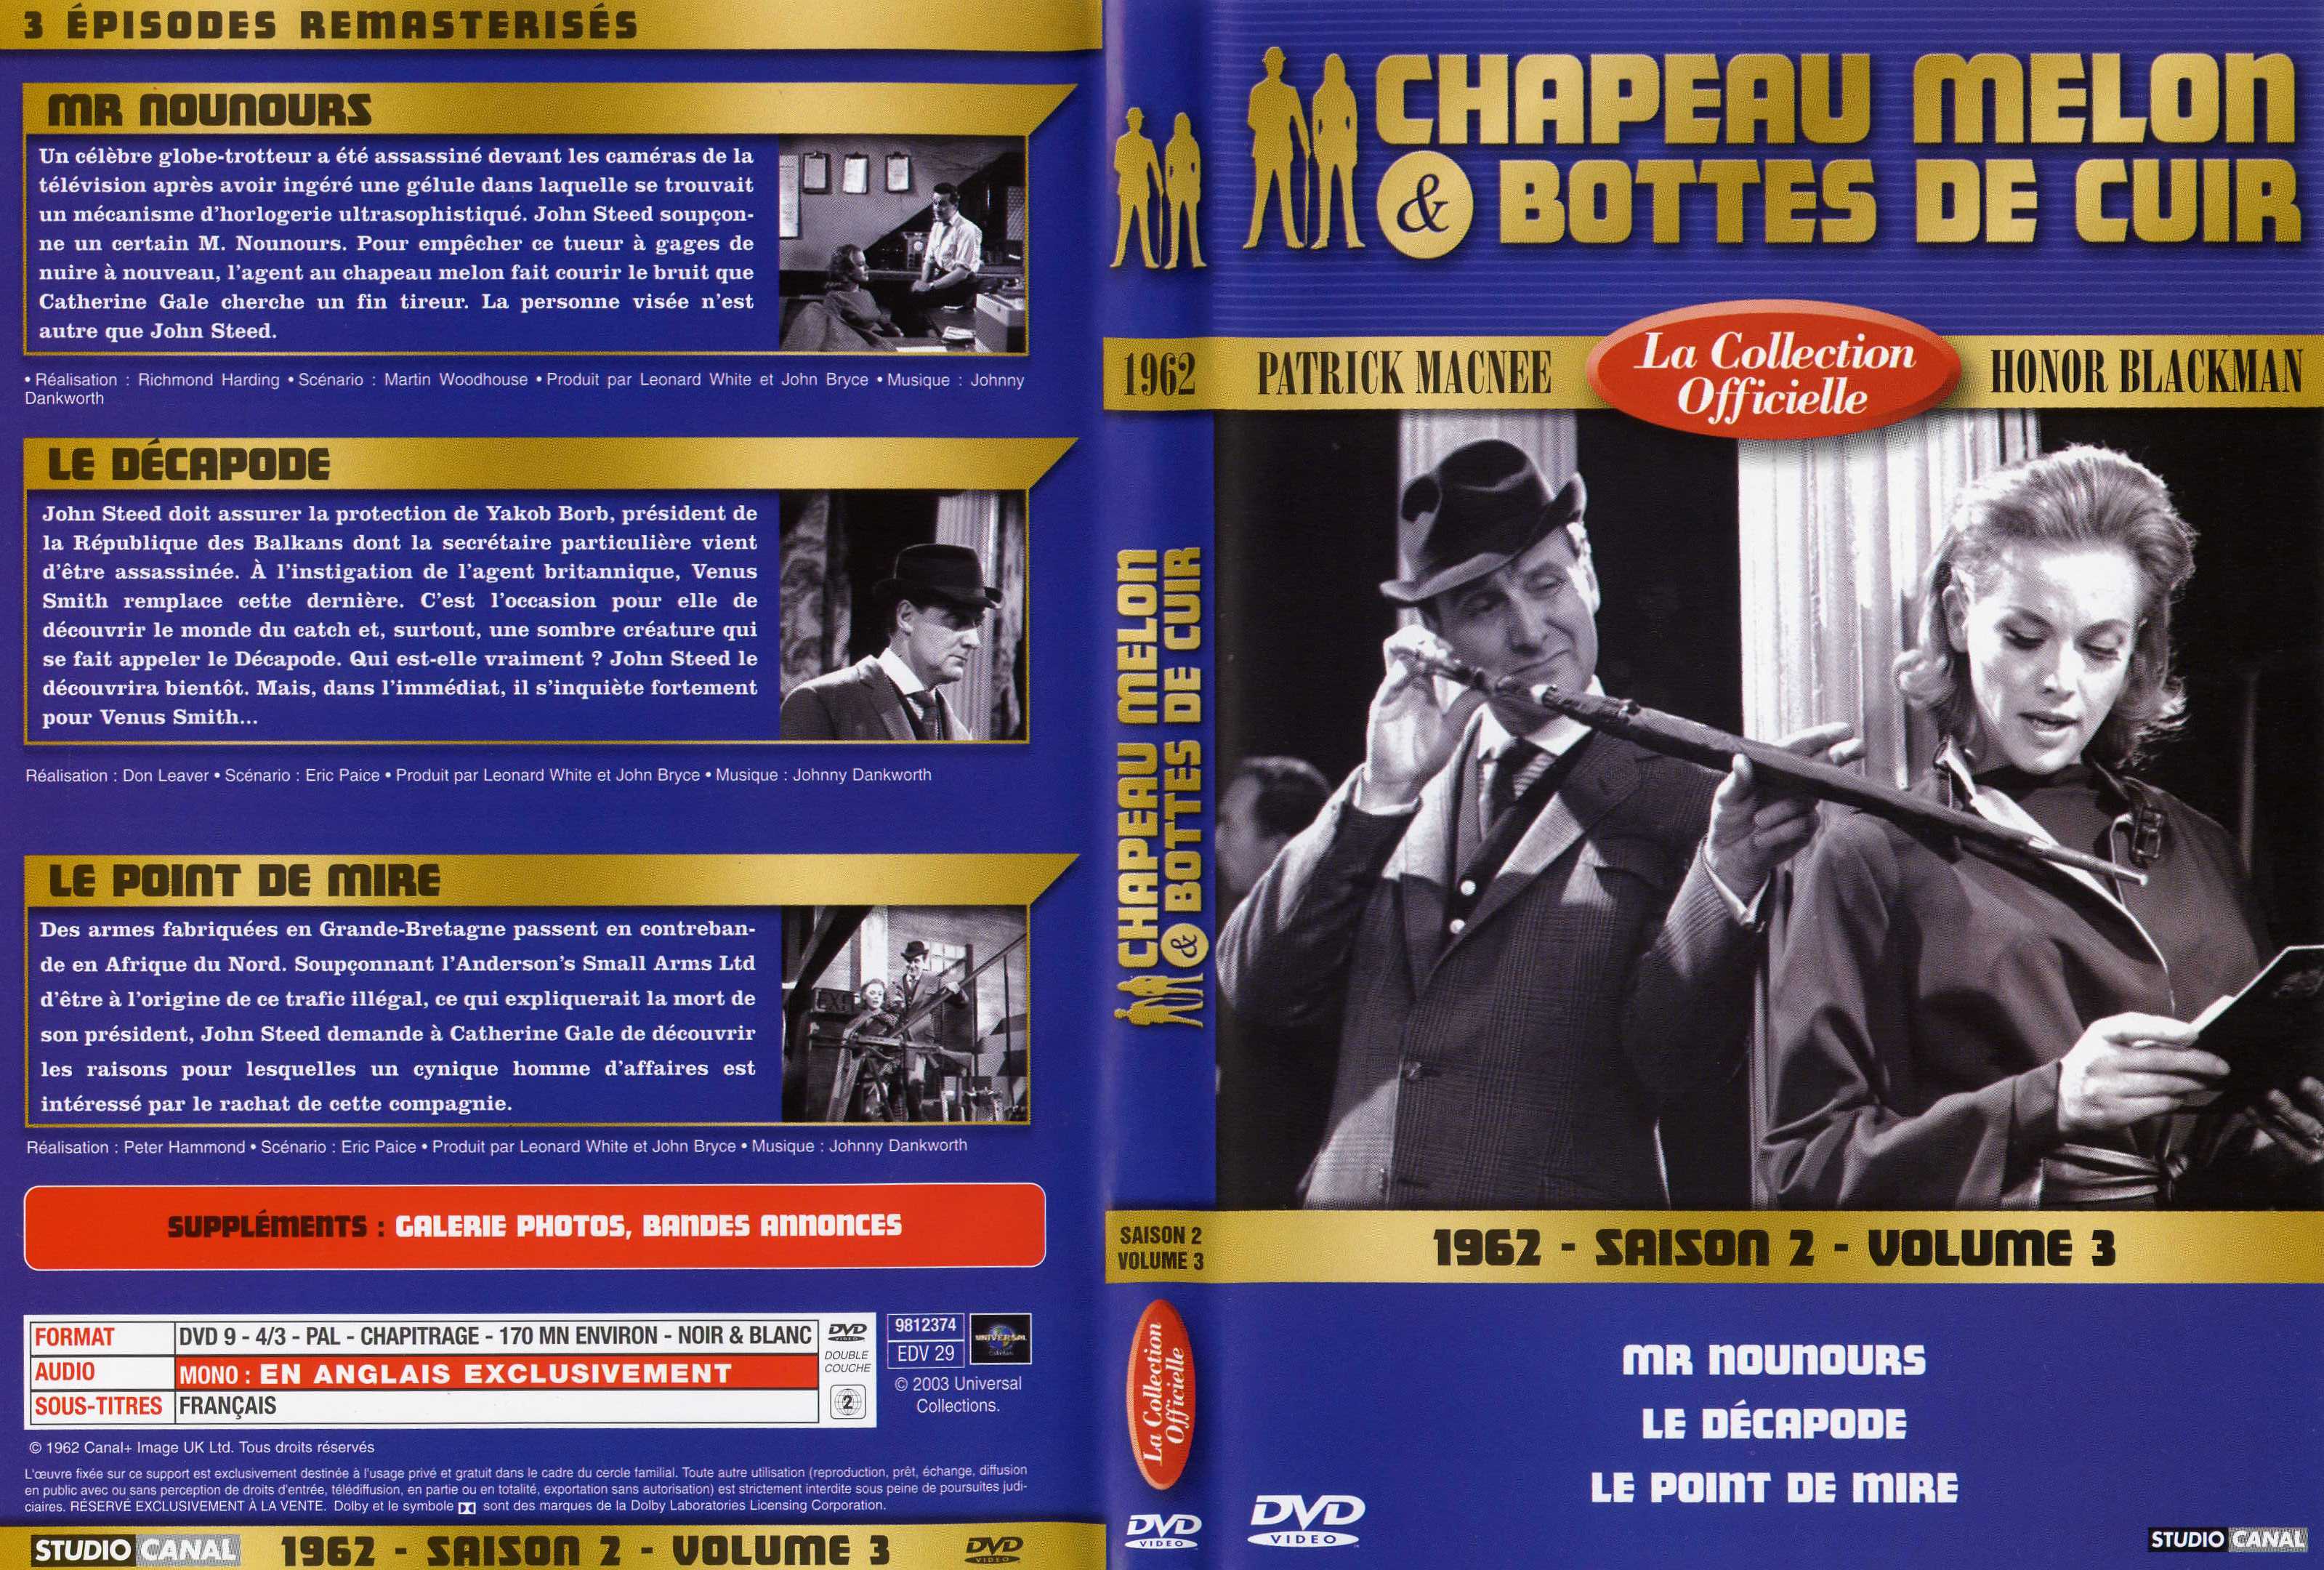 Jaquette DVD Chapeau melon et bottes de cuir 1962 saison 2 vol 3